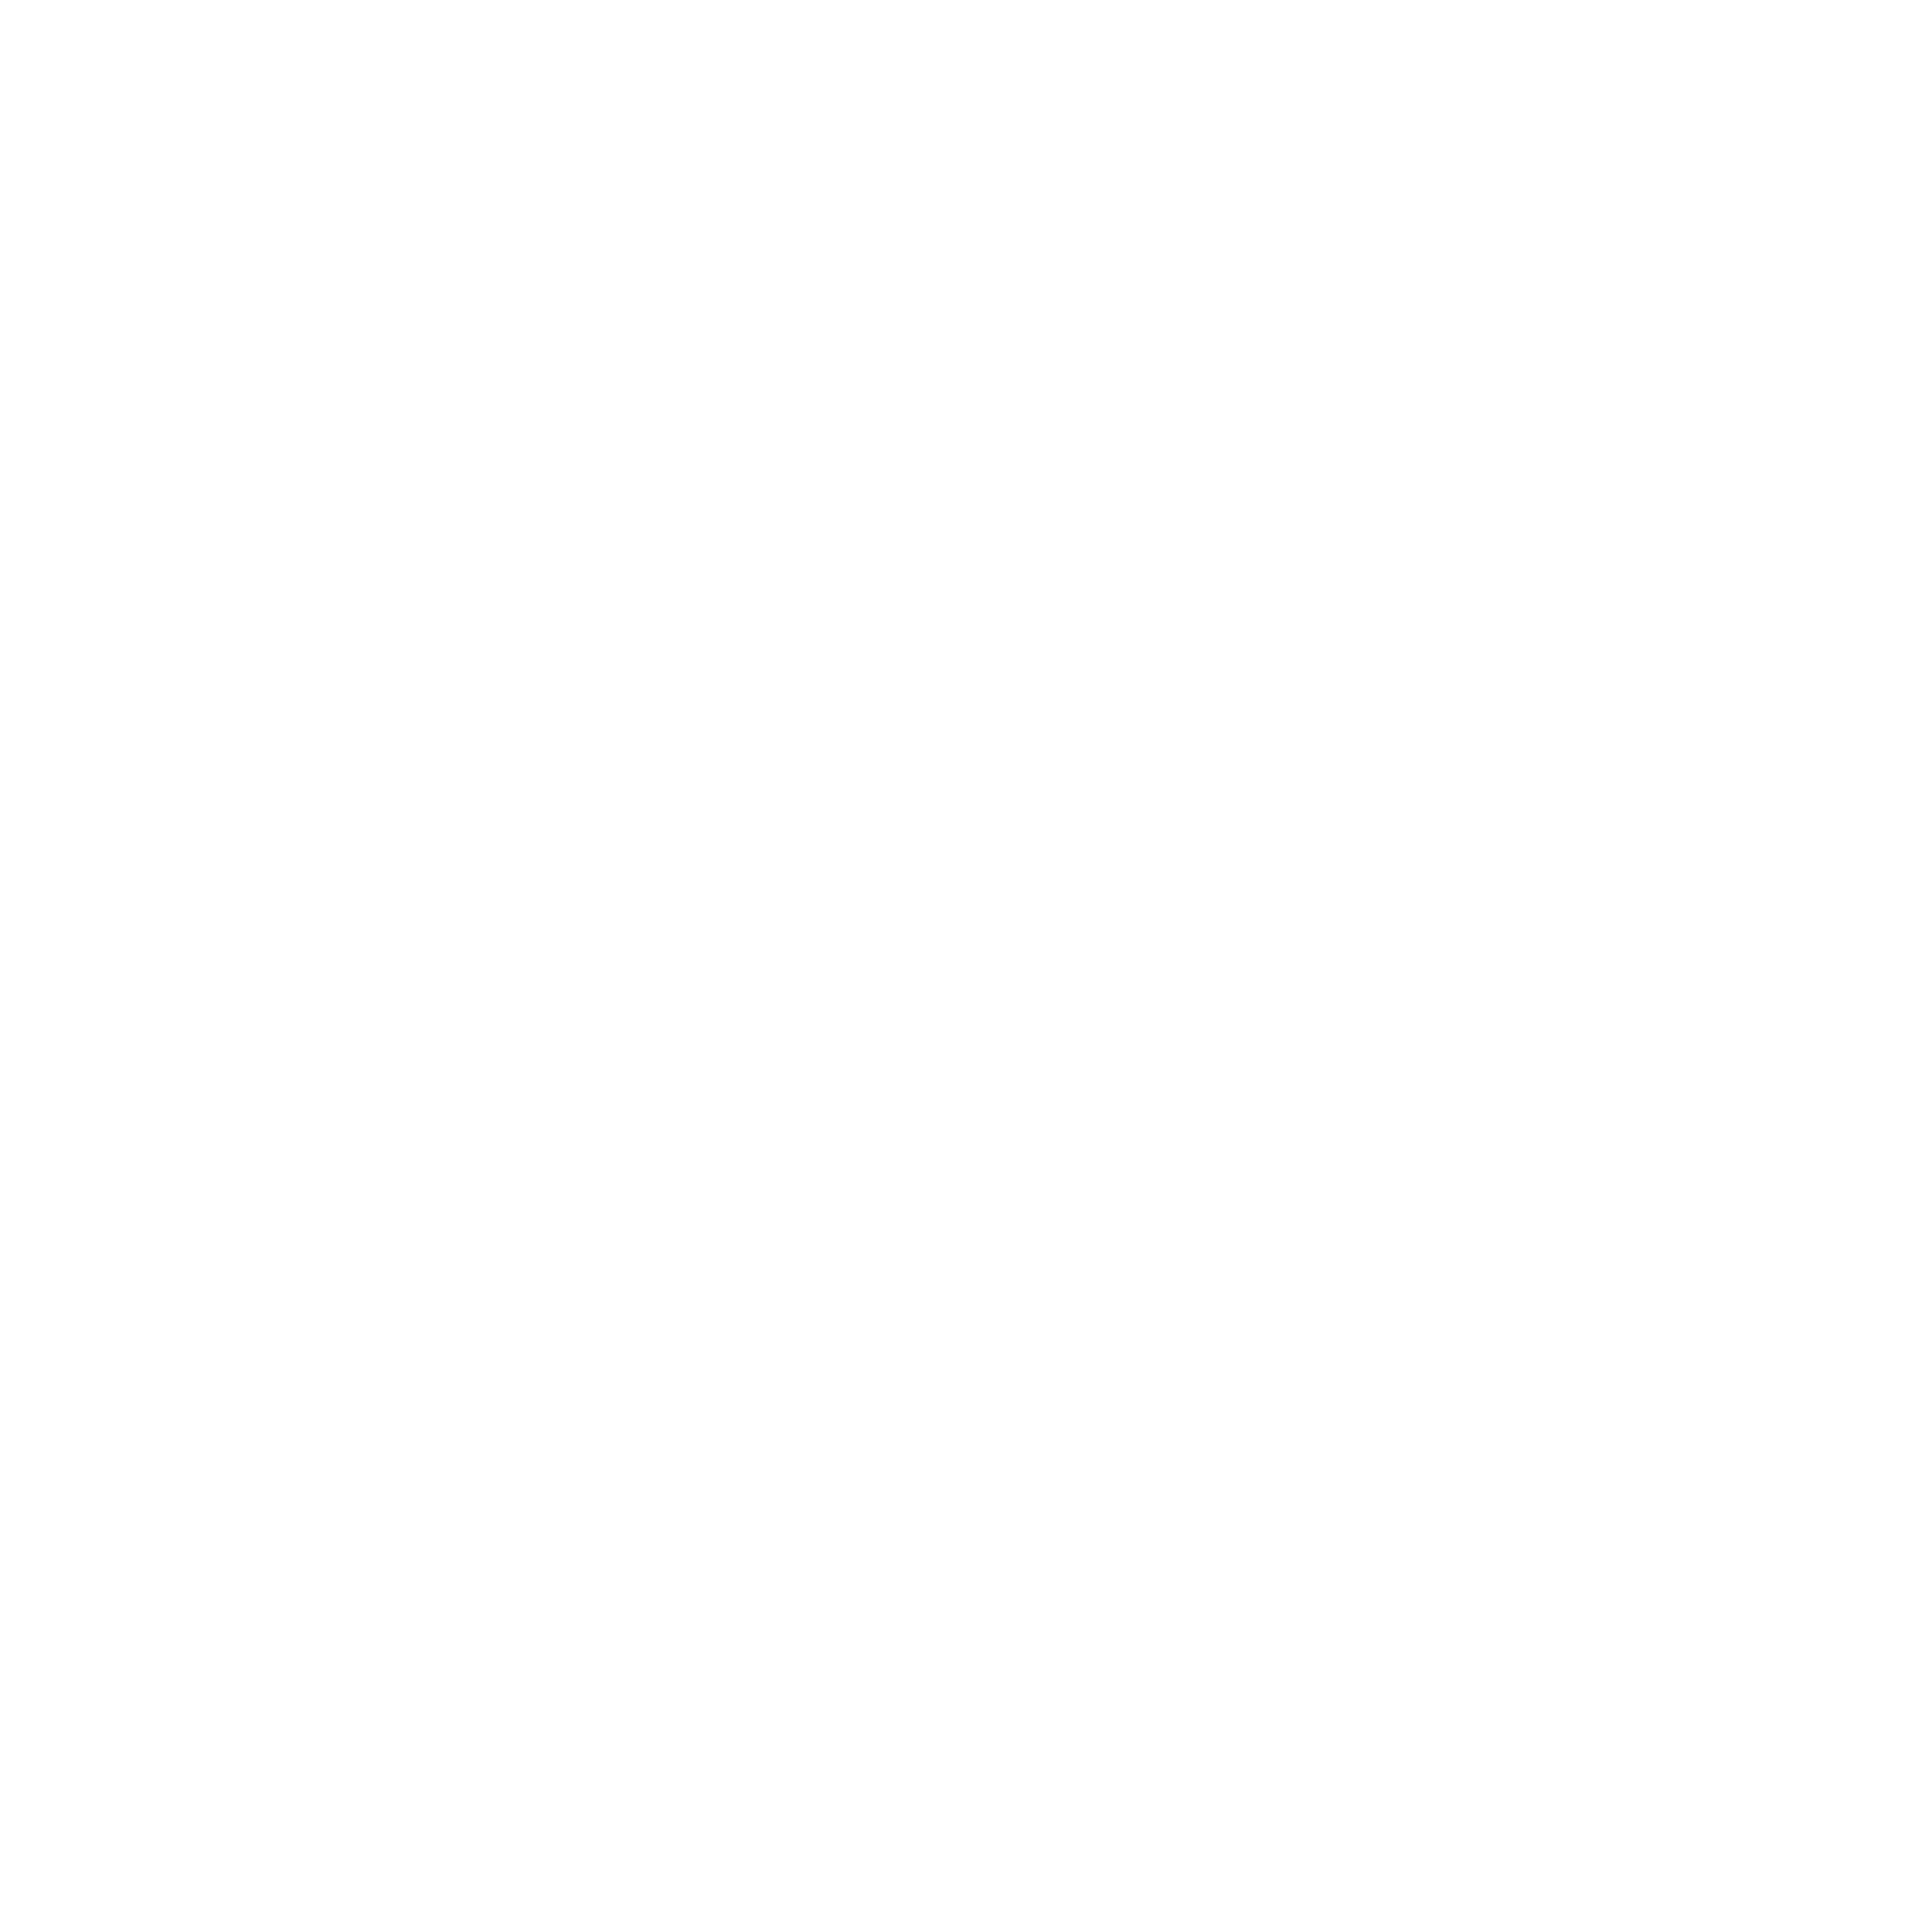 7558306_crane_construction_architecture_icon